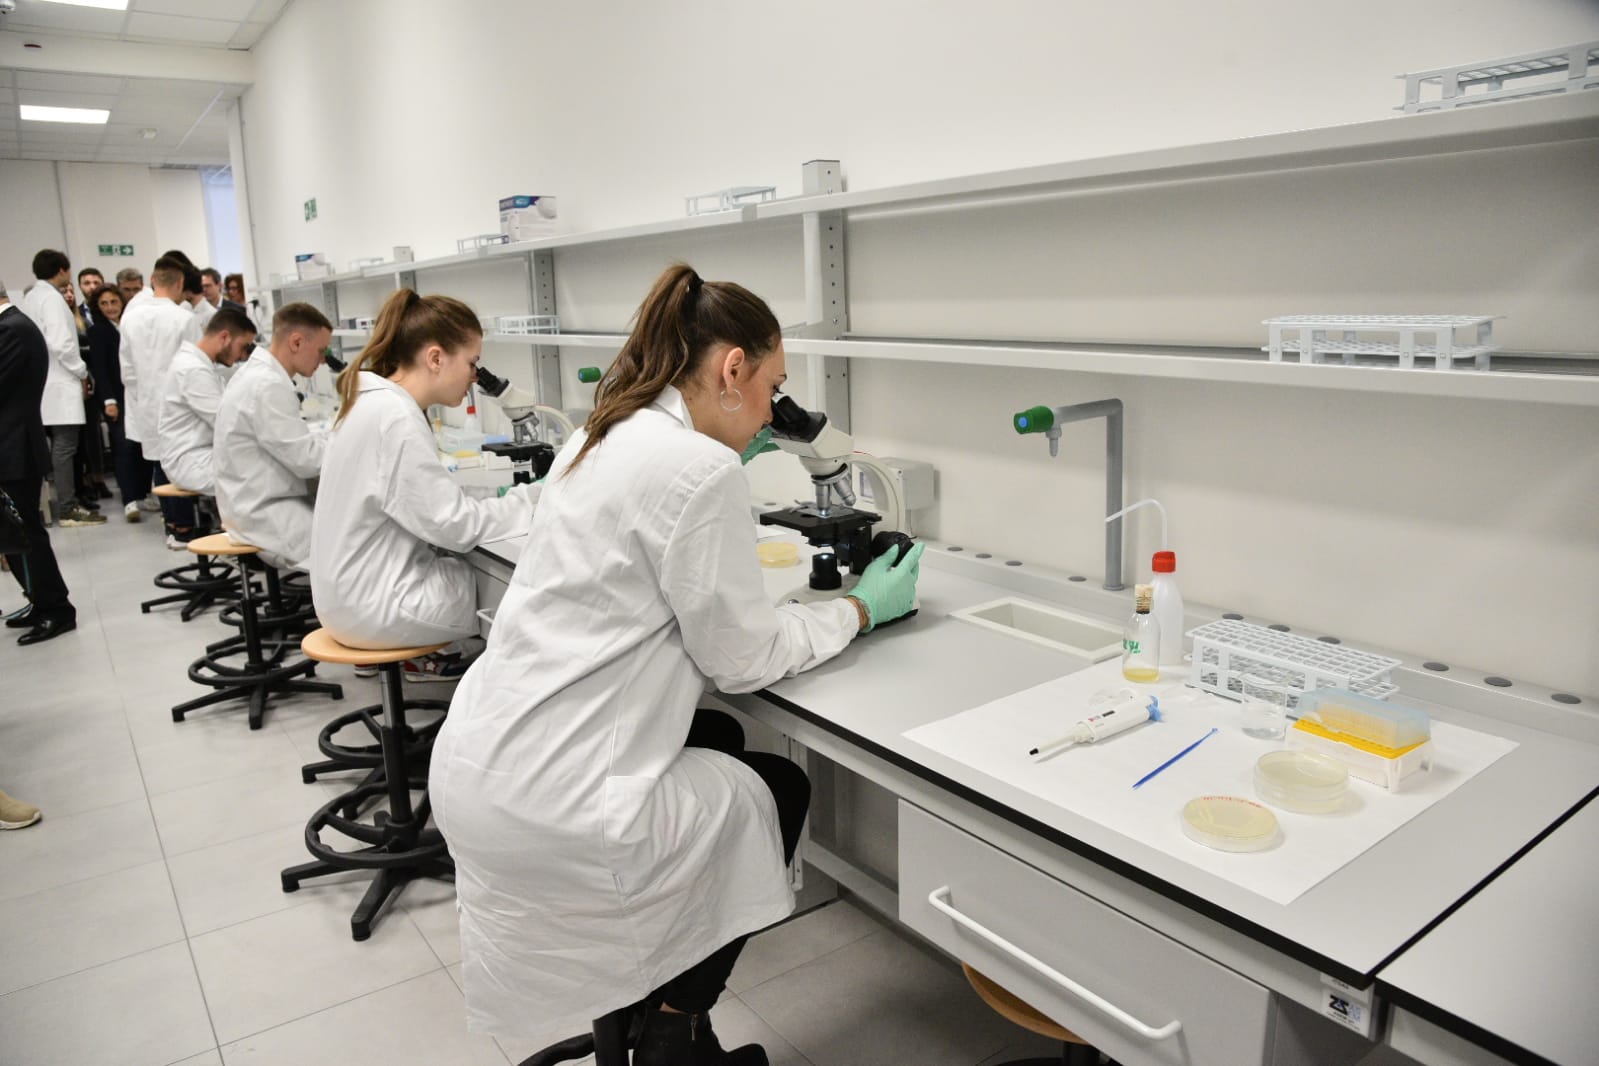 Inaugurato Il Laboratorio Chimico Biotecnologico “biolabotech” Foto